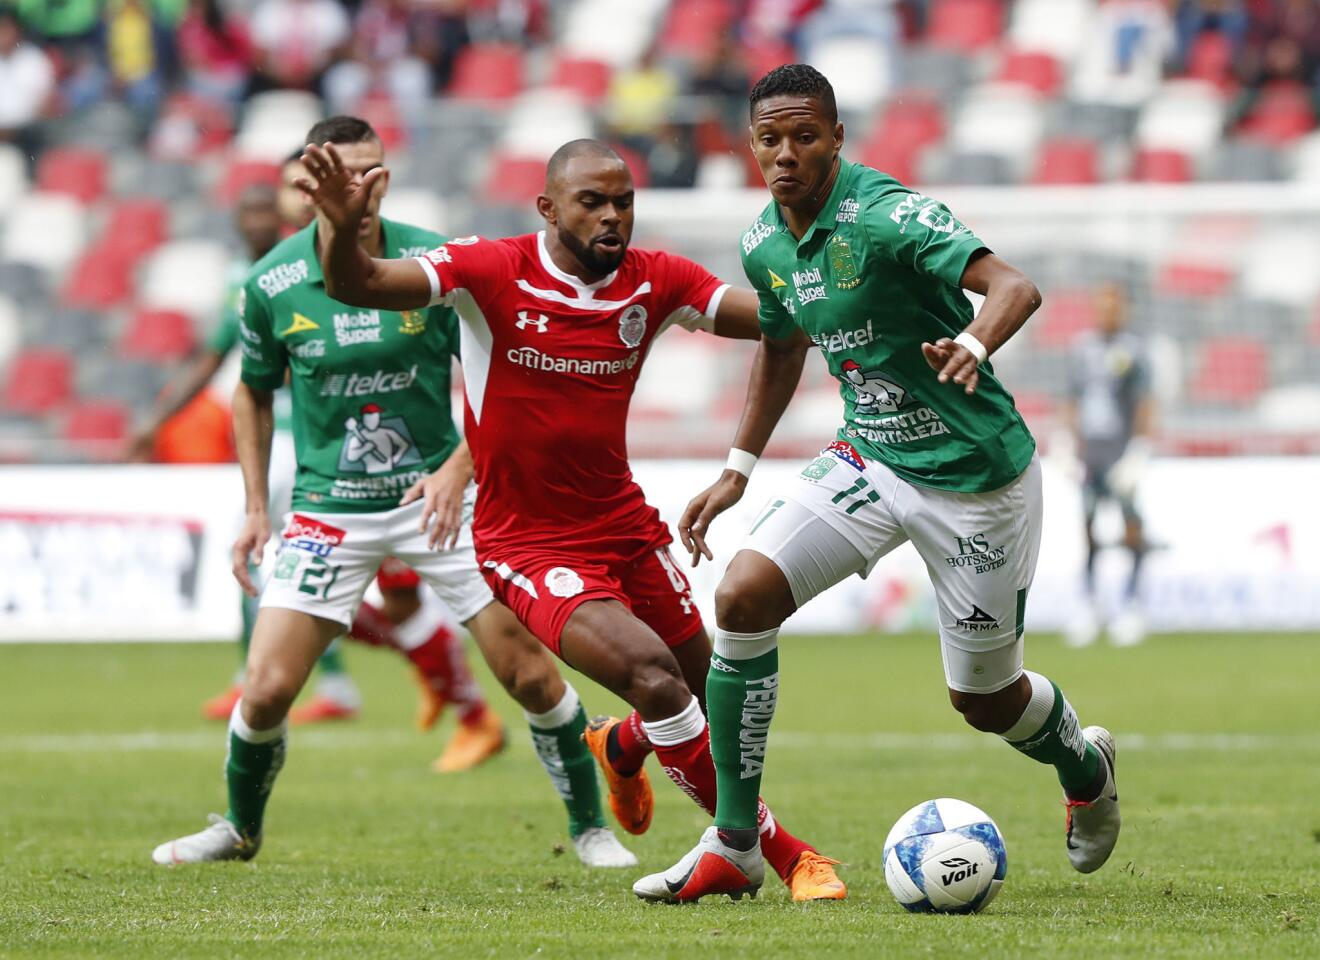 El jugador del Toluca, William Fernando Da Silva (c) y Yairo Moreno (d) del León en acción durante el partido este domingo 26 de agosto en el estadio Nemesio Diez.